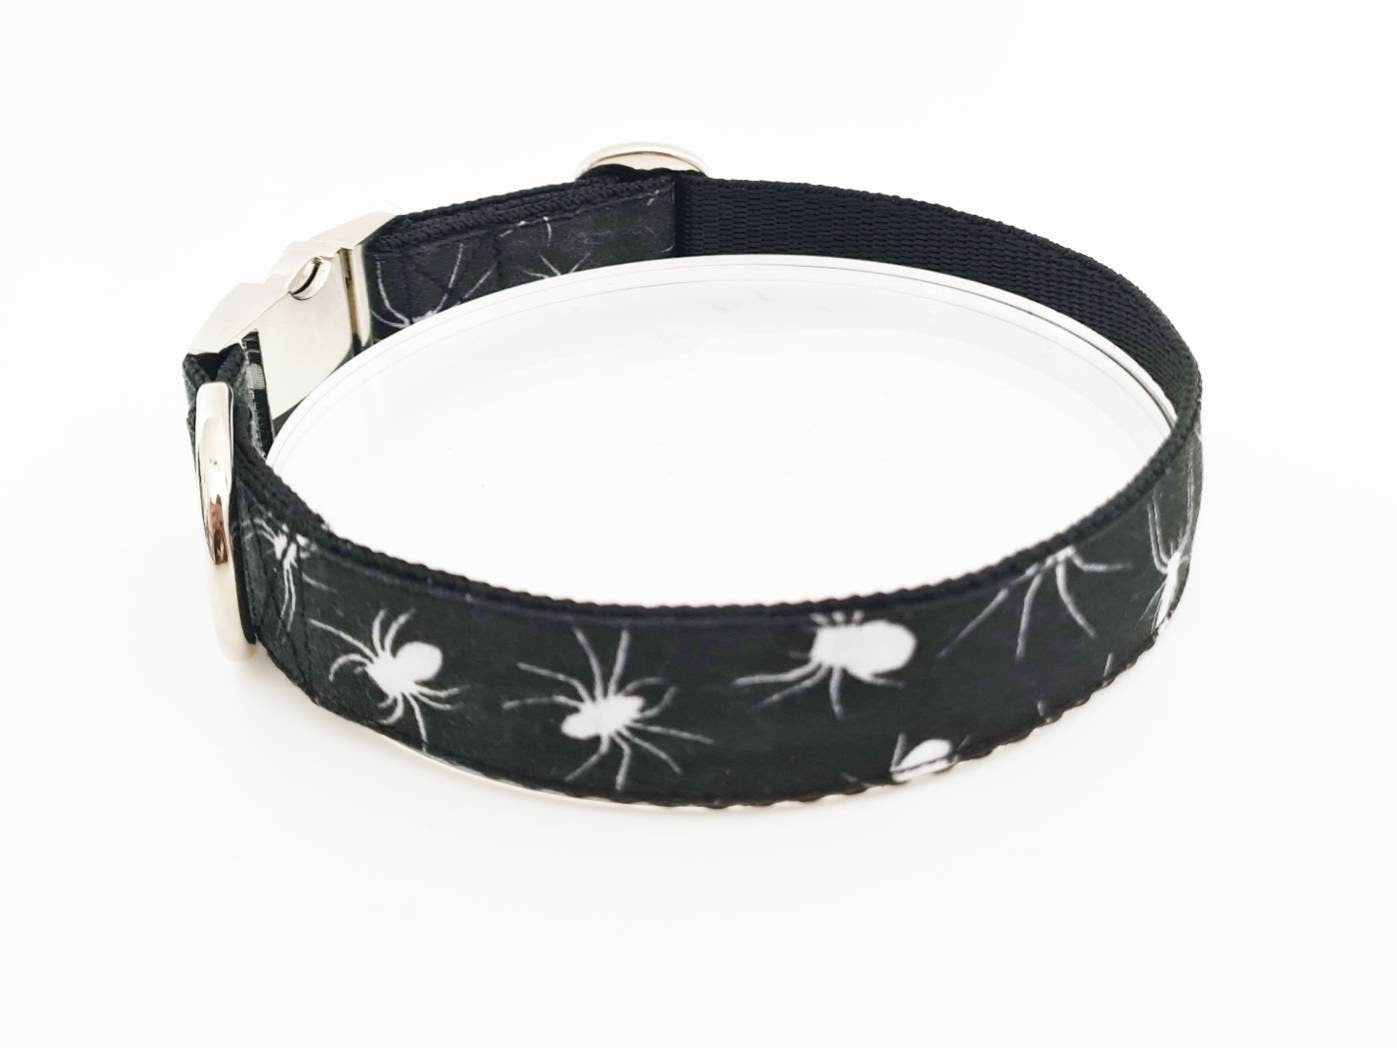 Spider dog collar